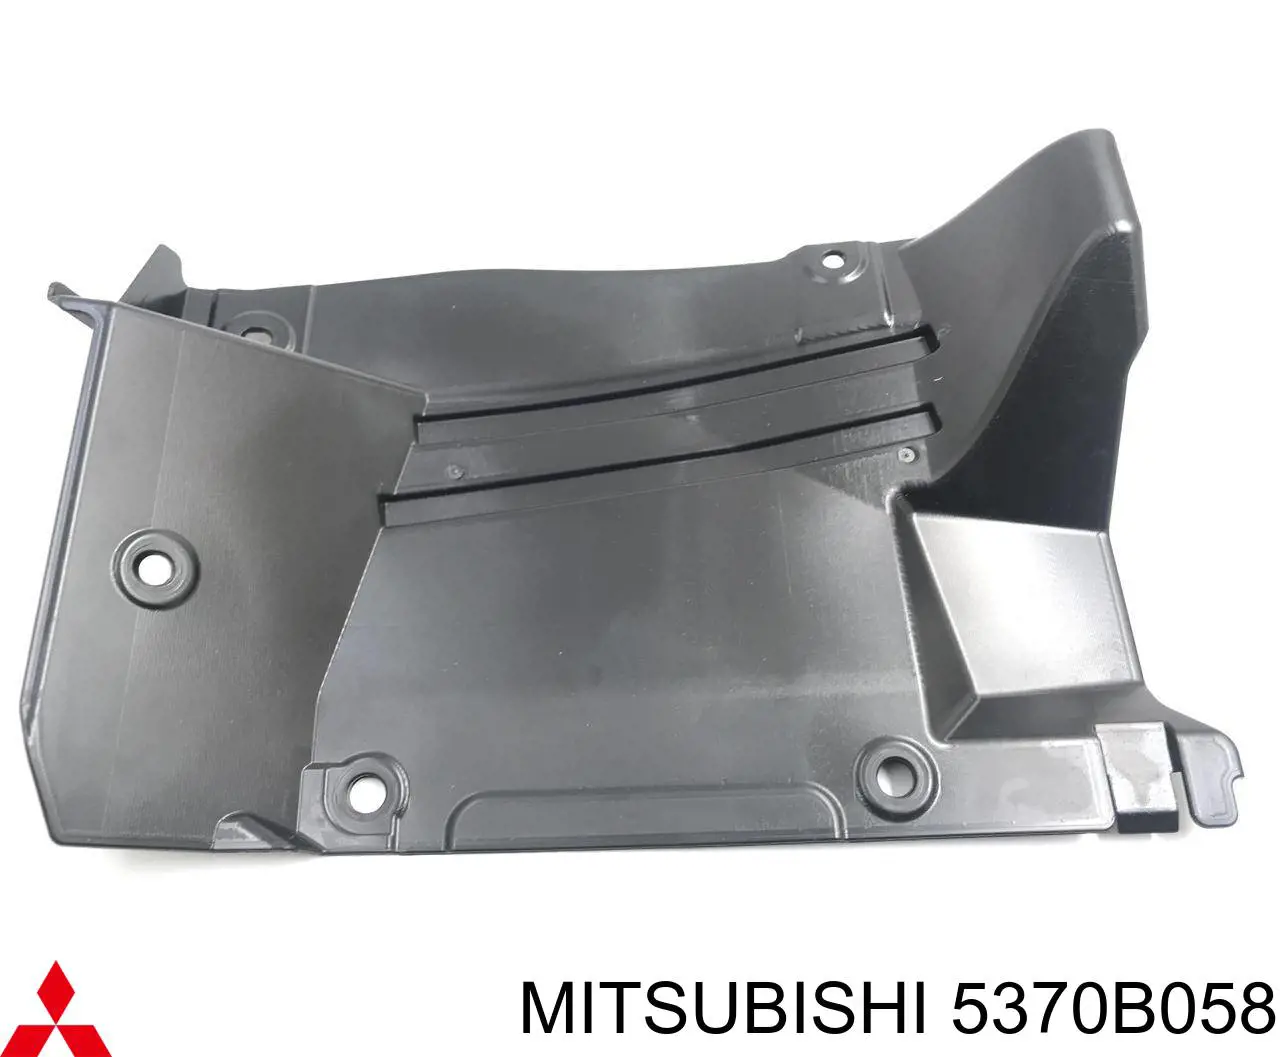 5370B058 Mitsubishi protección motor derecha